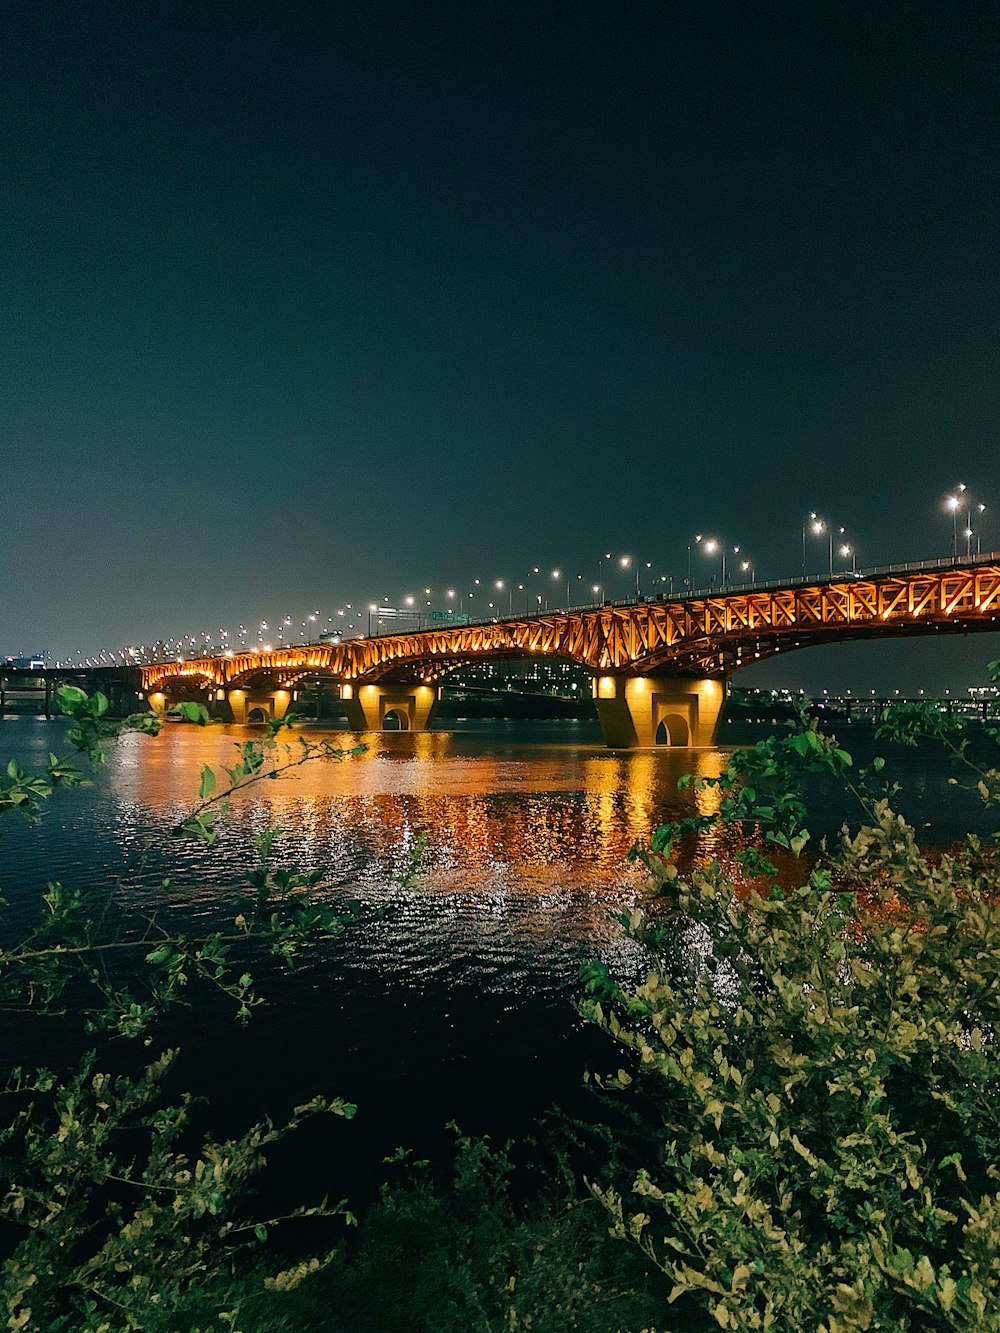 lit metal bridge at night